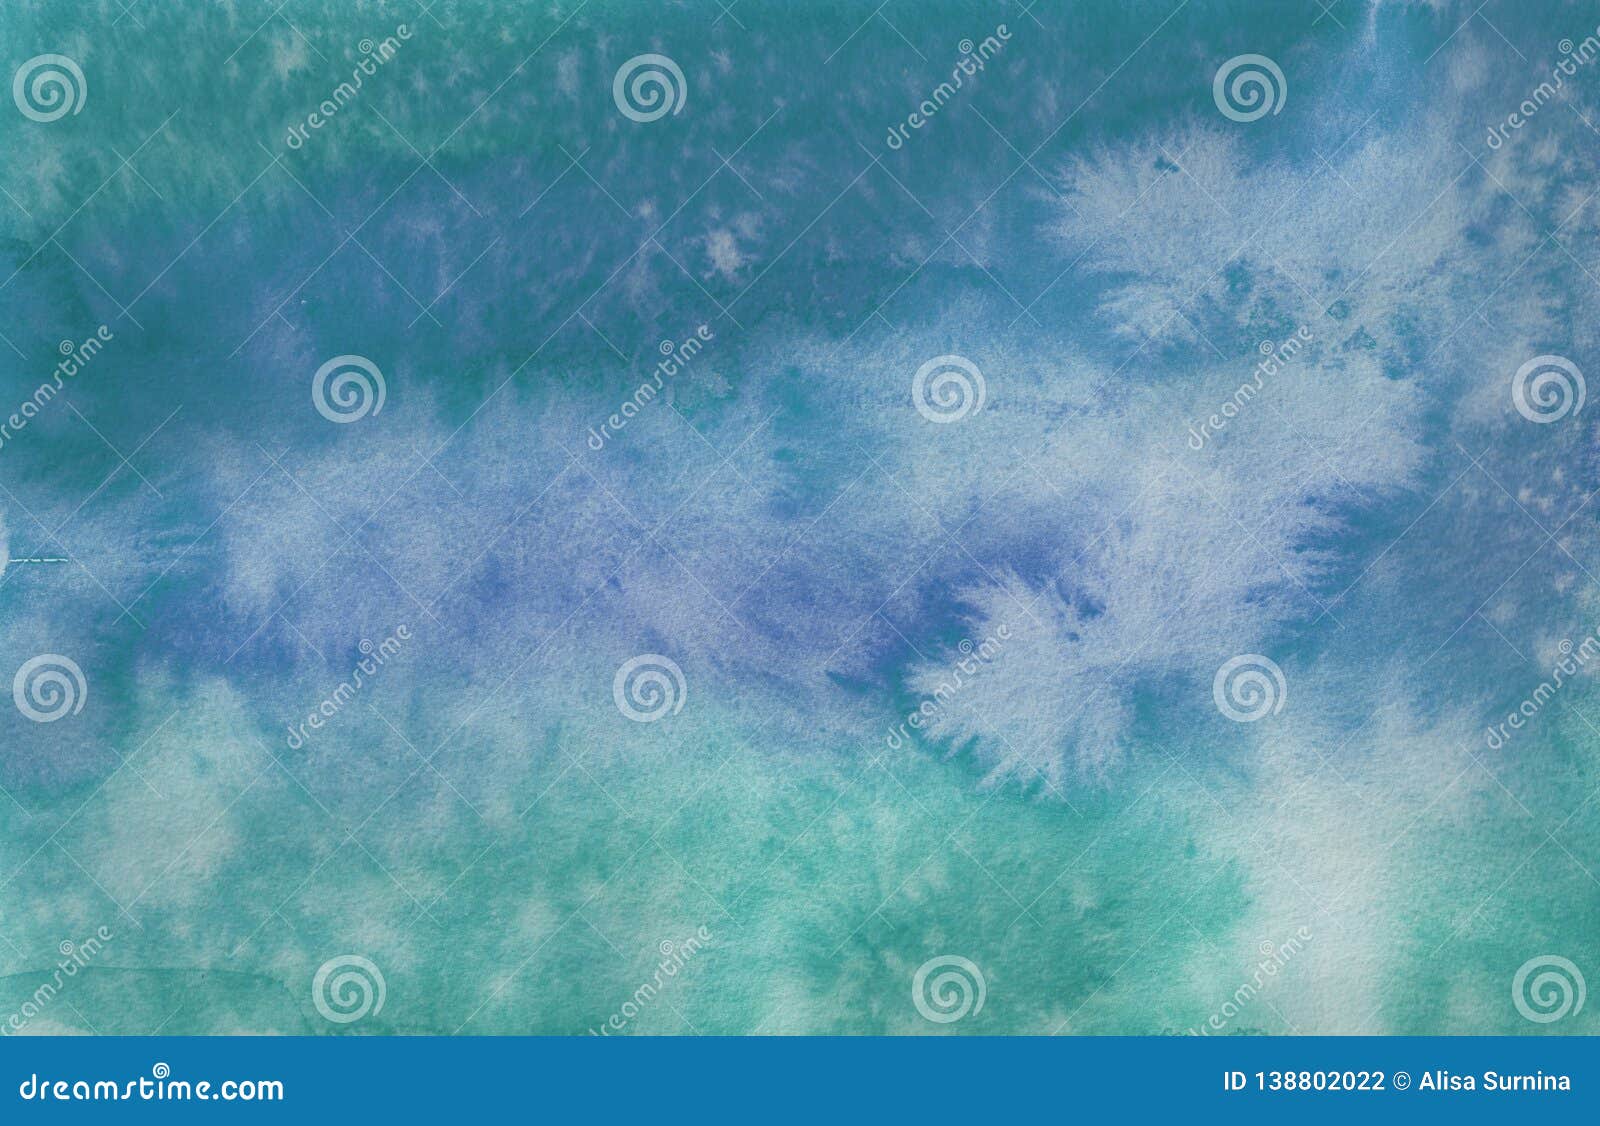 Pastel Sky Water Marbling Set